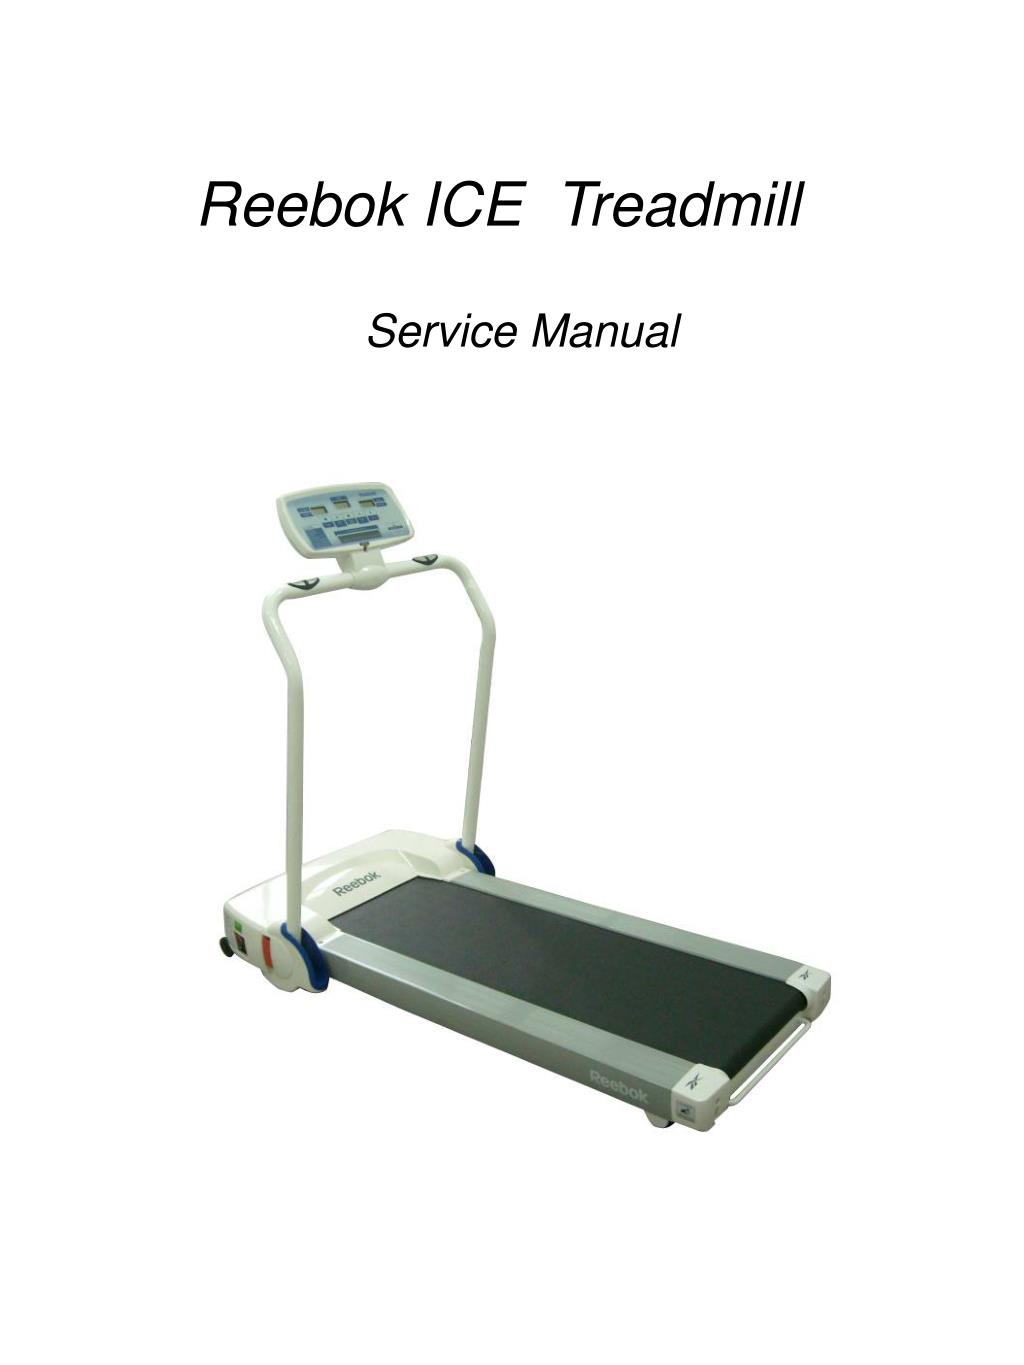 reebok ice run treadmill